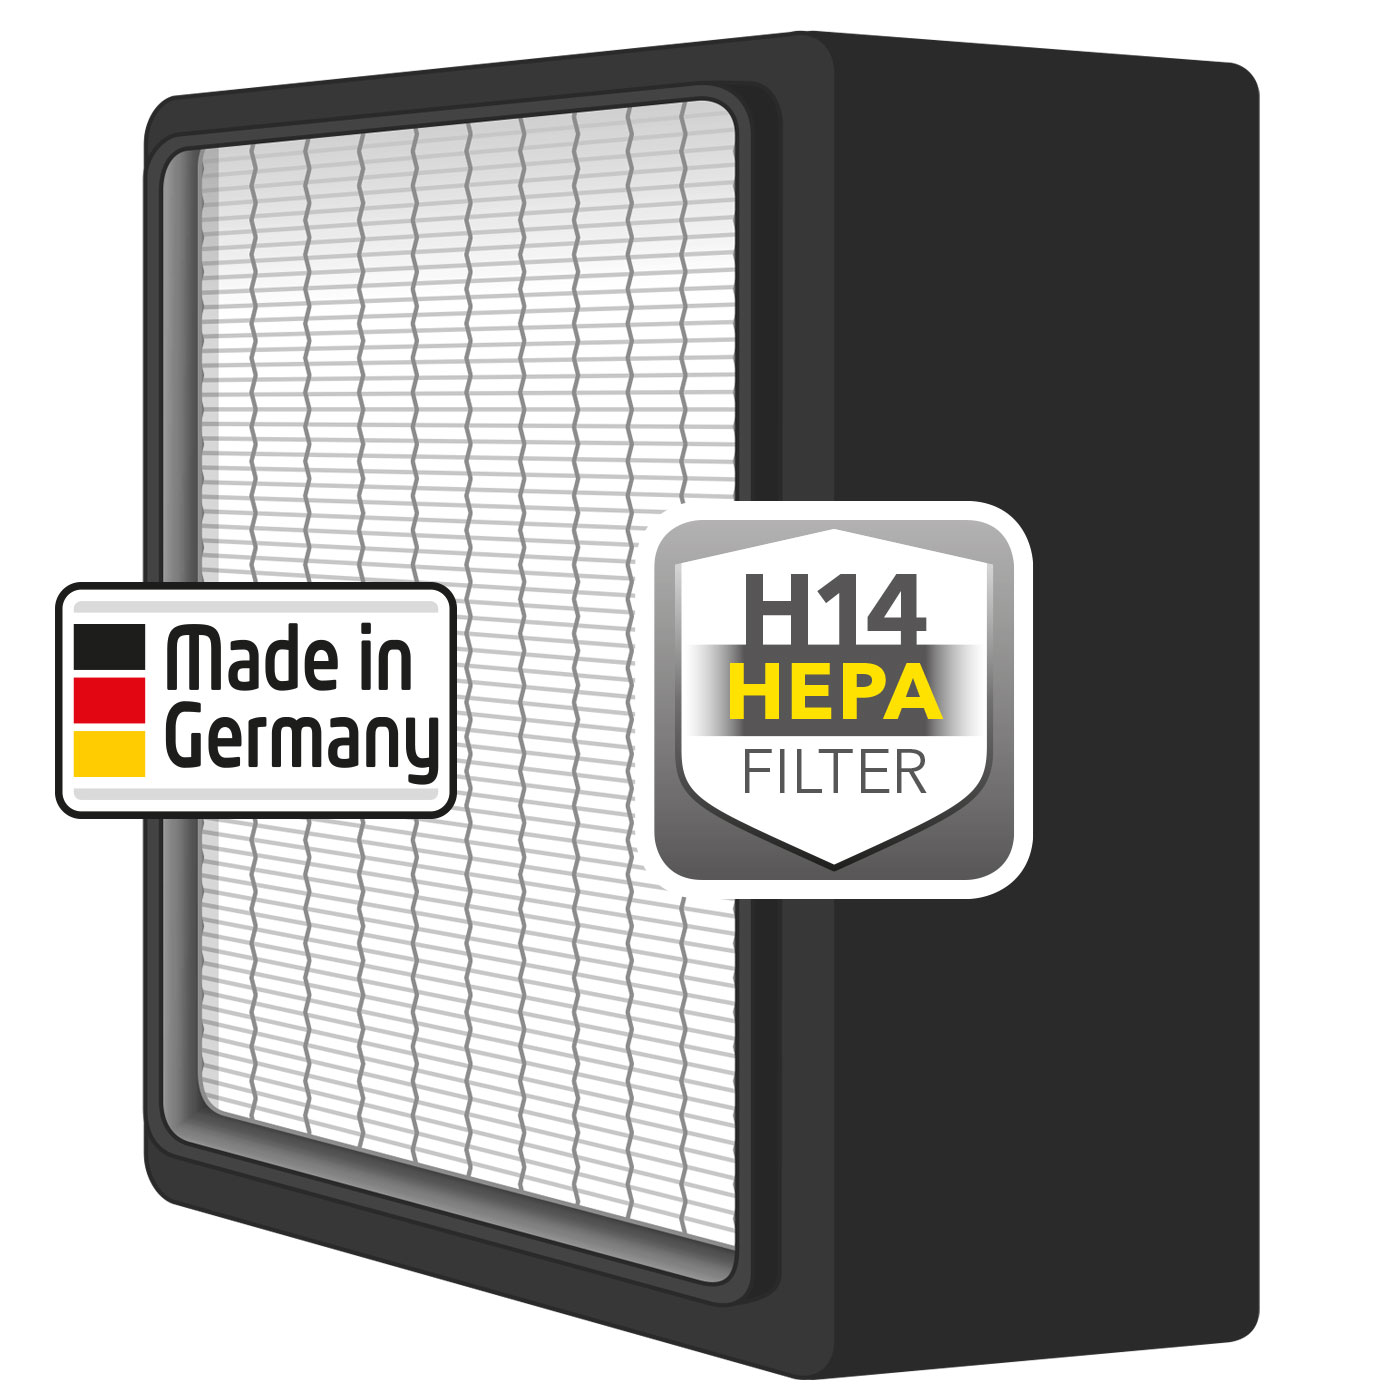 H14 HEPA filtar (EN 1822)